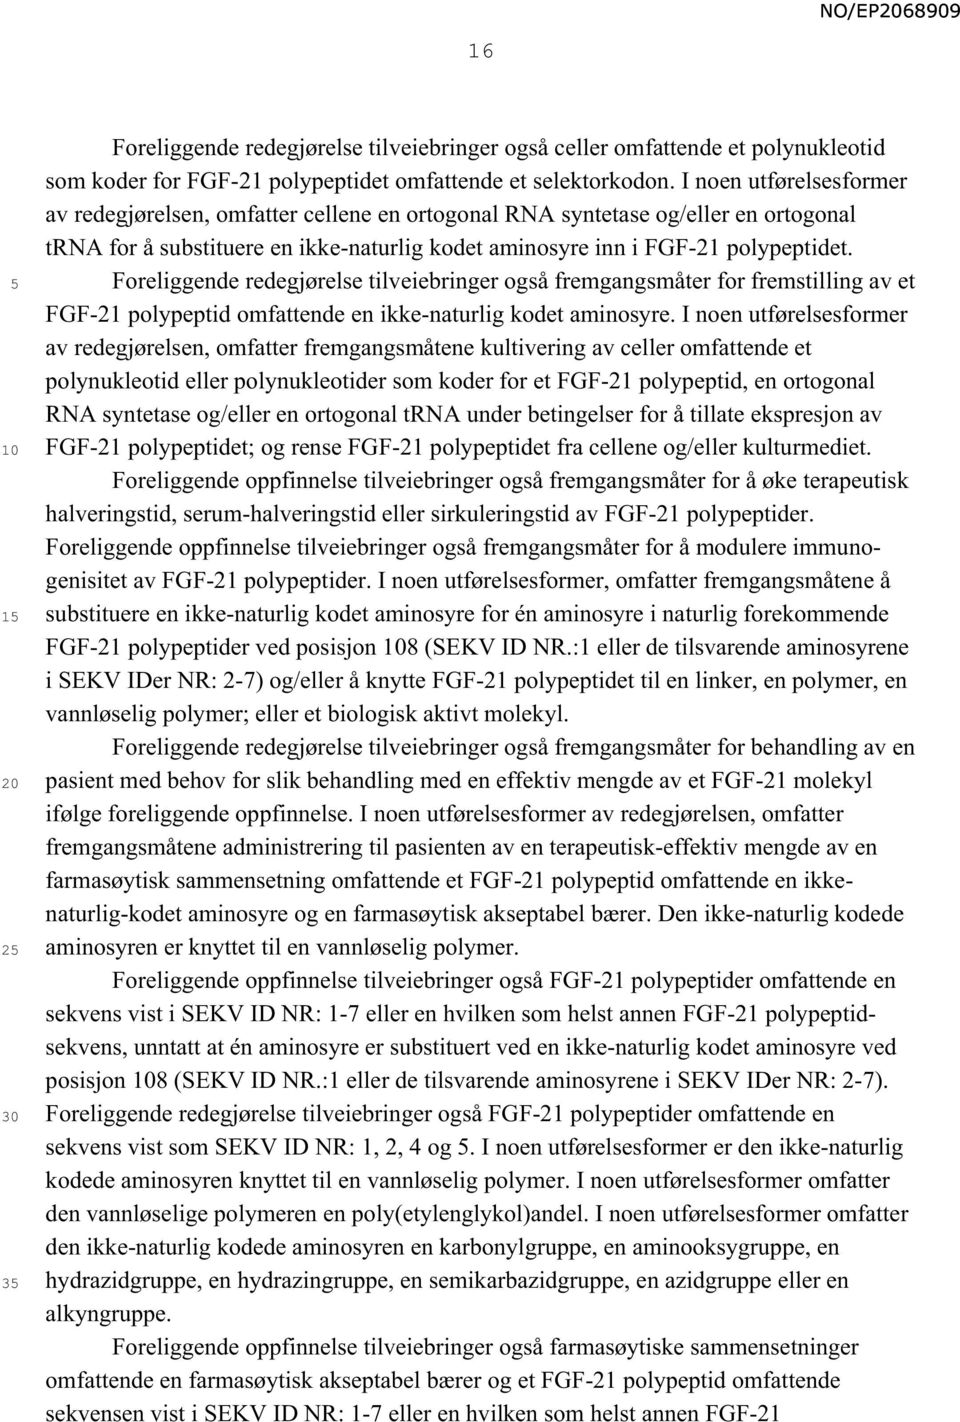 Foreliggende redegjørelse tilveiebringer også fremgangsmåter for fremstilling av et FGF-21 polypeptid omfattende en ikke-naturlig kodet aminosyre.